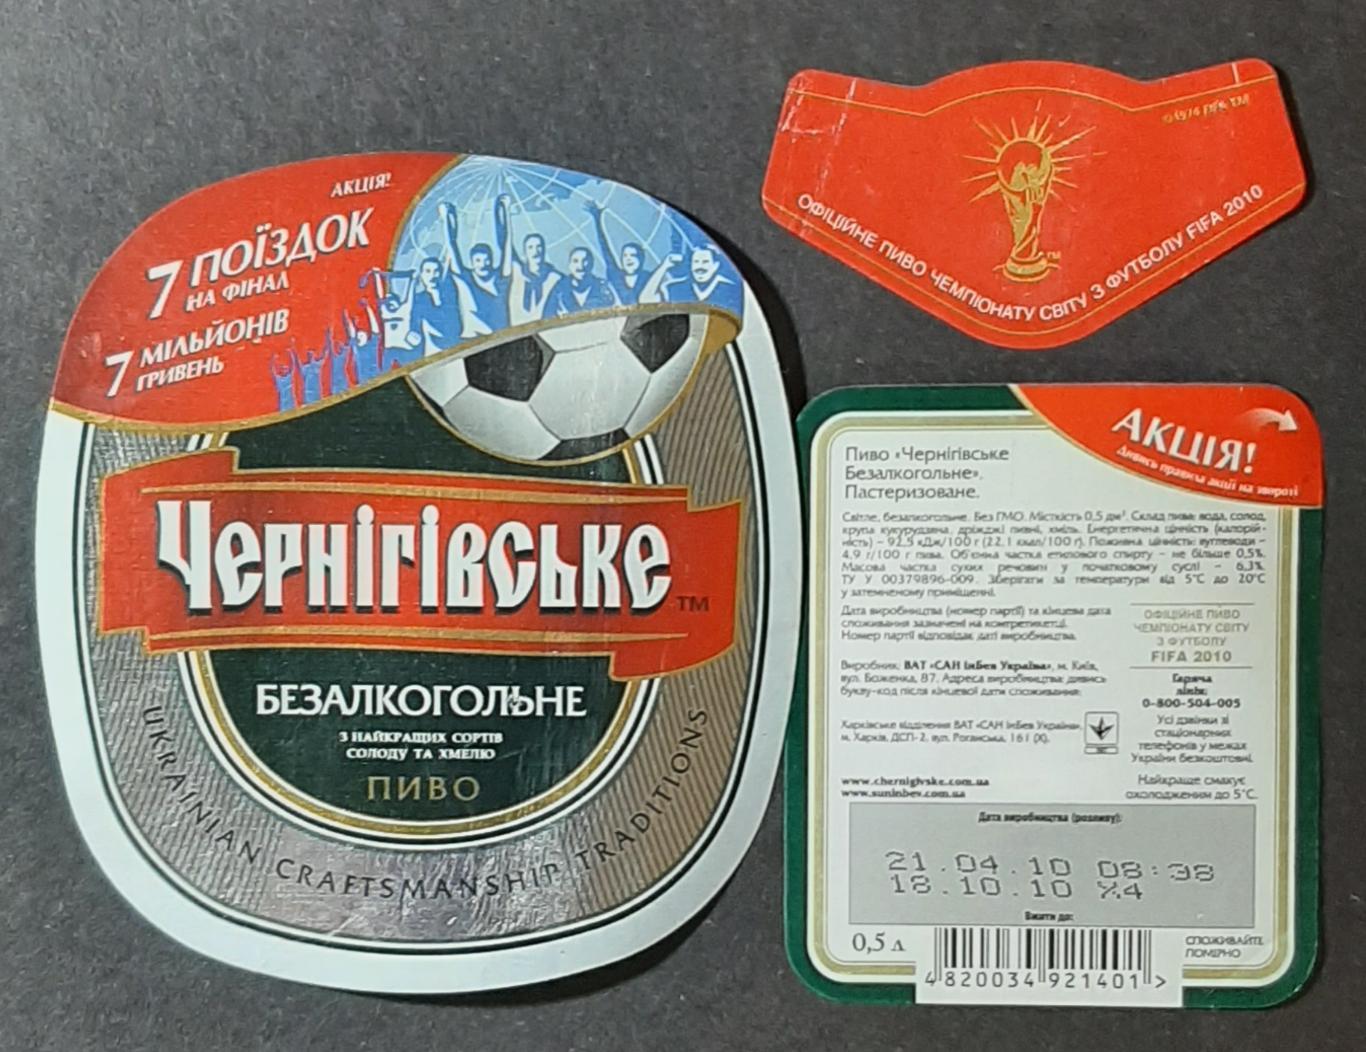 Пивна етикетка Чернігівське безалкогольне акція Футбол 2010 (1)